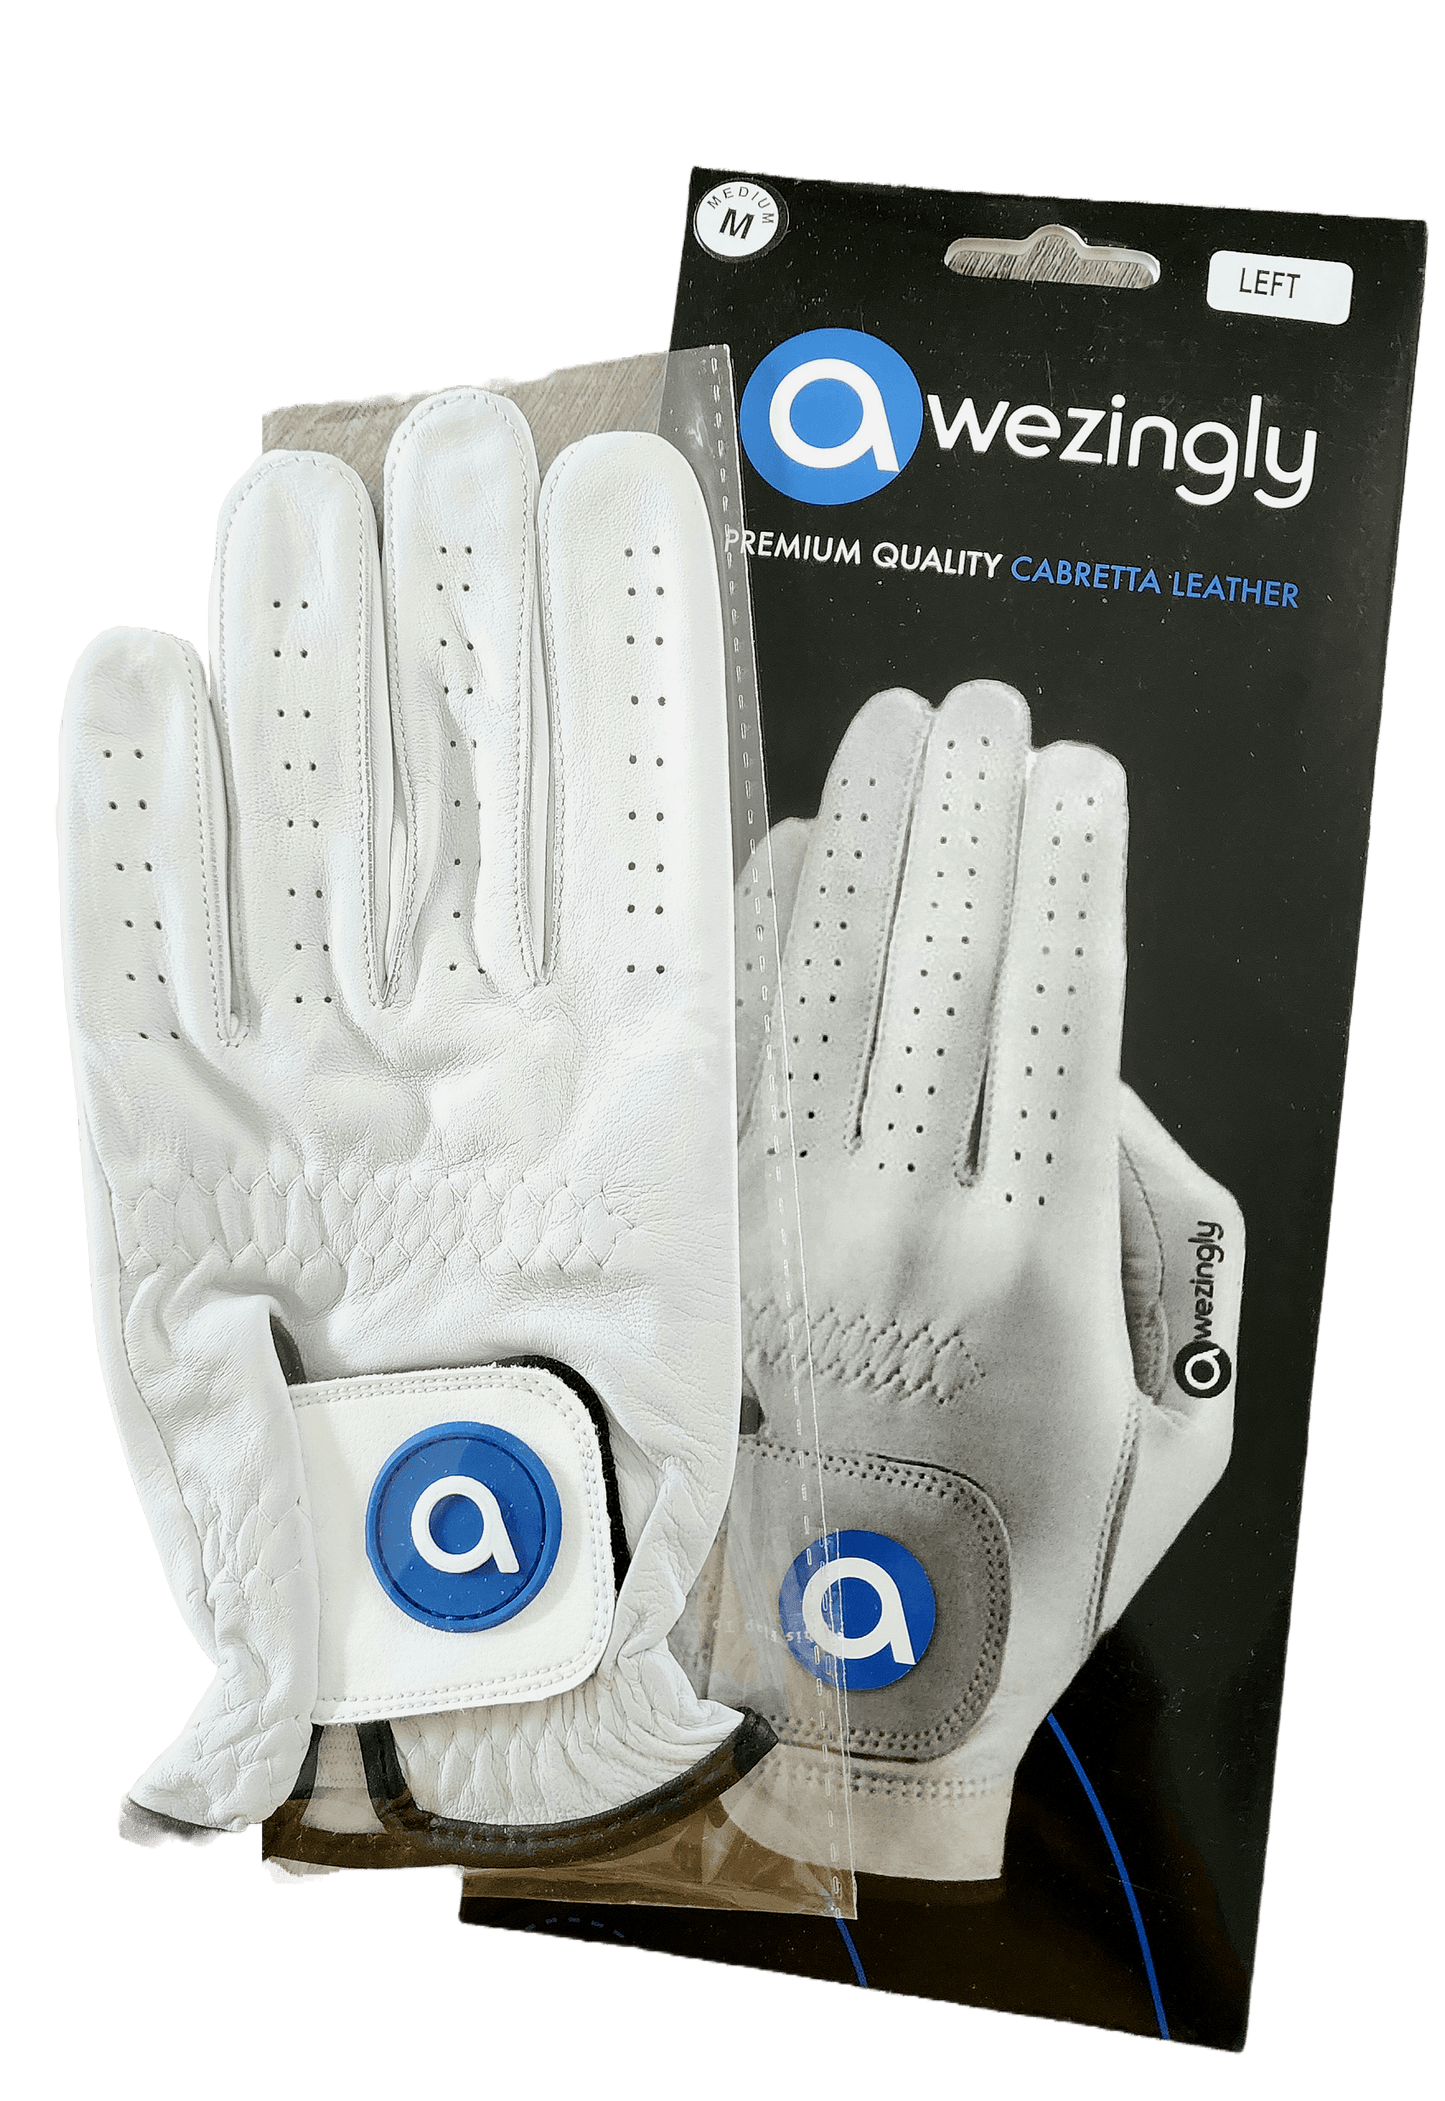 Premium Quality Cabretta Leather Golf Glove for Men - White (M/L)